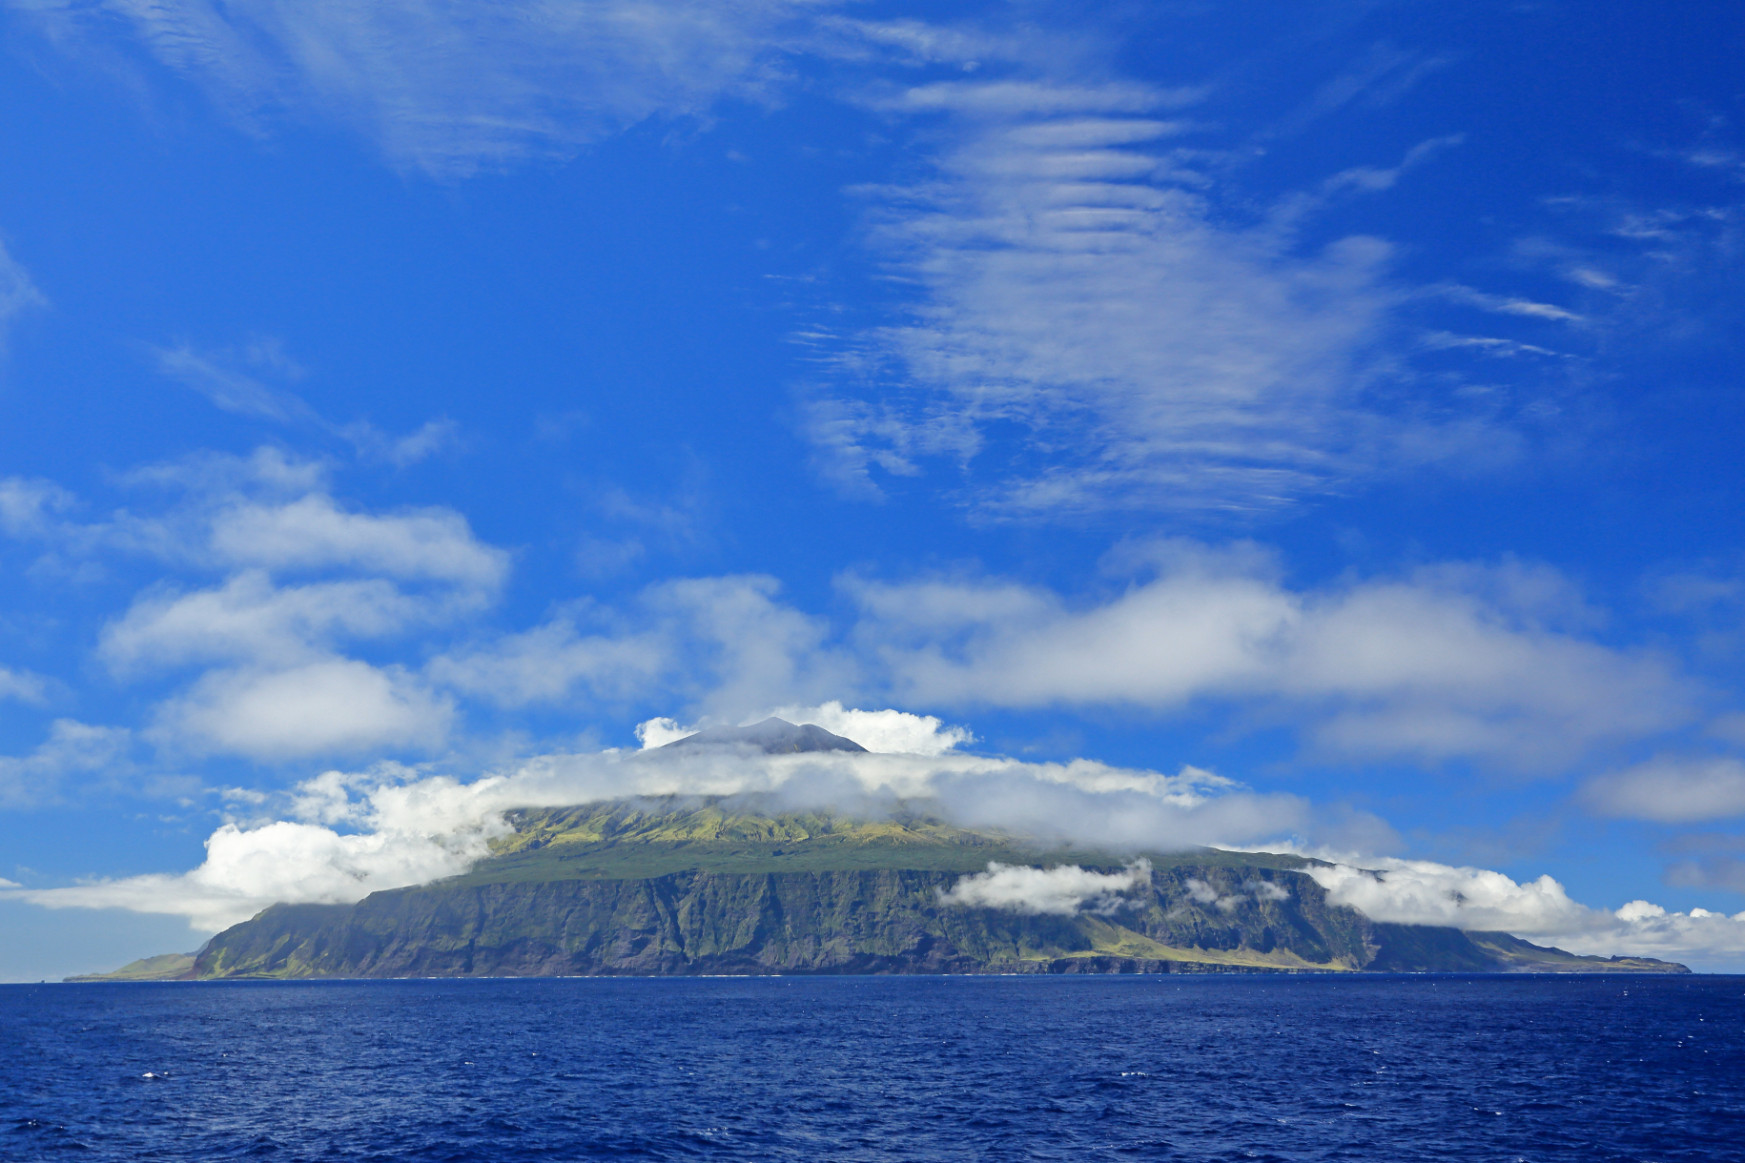 Van egy aprócska sziget az Atlanti-óceán közepén, ahol csak egy évvel később tudták meg, hogy véget ért az első világháború